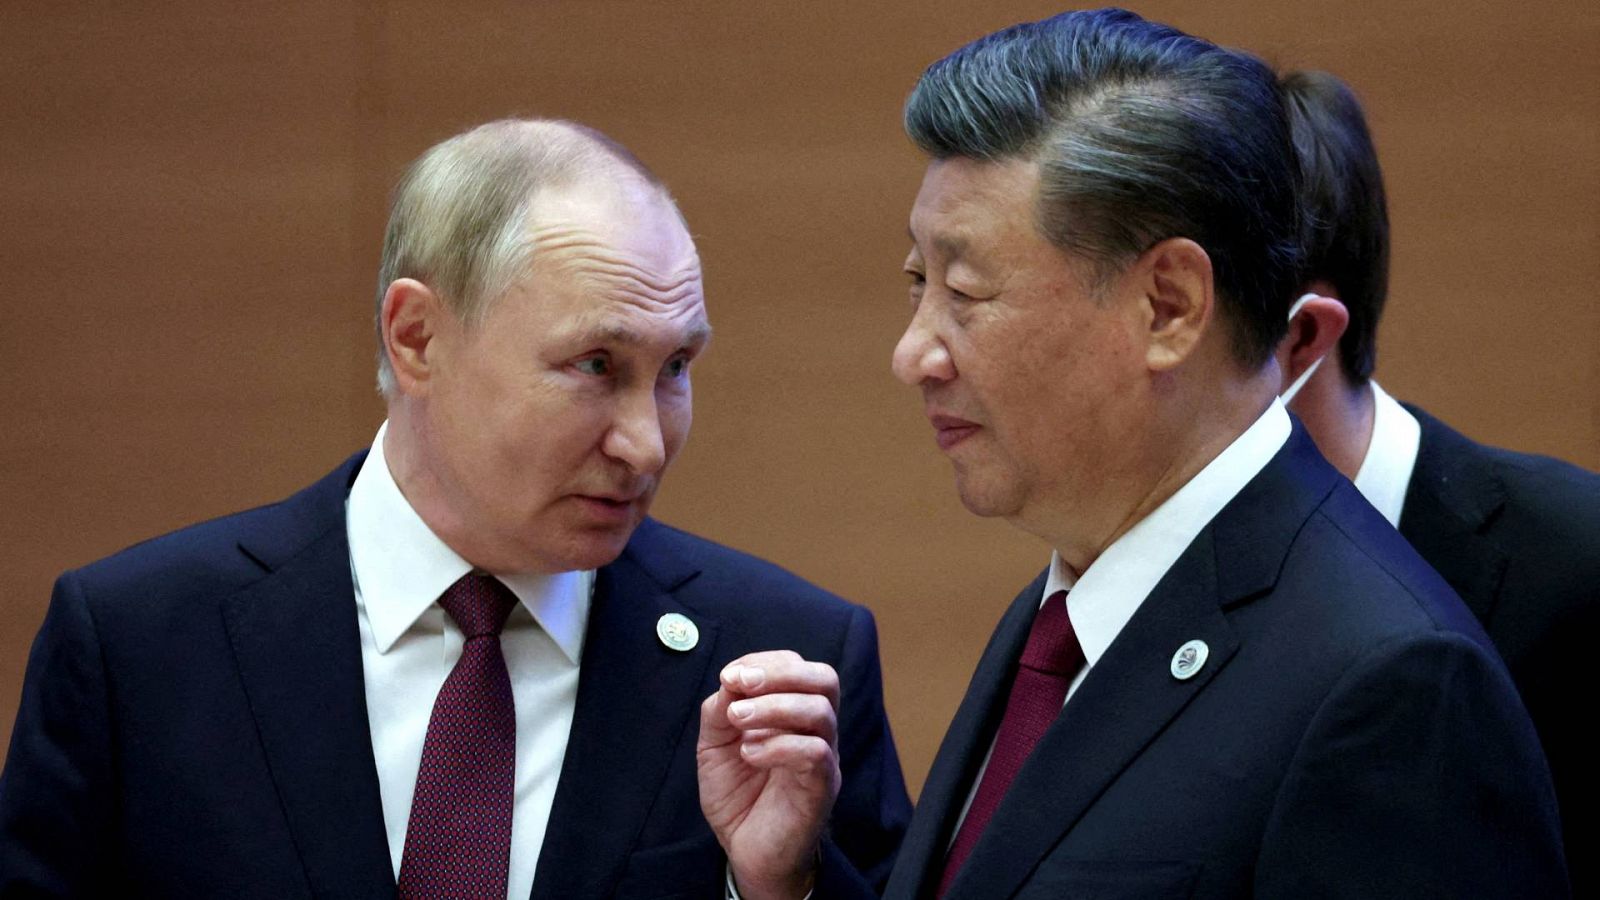 Imagen de archivo: el presidente ruso, Vladímir Putin, habla con el chino, Xi Jinping, en la cumbre de la Organización de Cooperación de Shanghai, el pasado septiembre, en Samarcanda (Uzbekistán). Foto: Sputnik/Sergey Bobylev/pool vía REUTERS